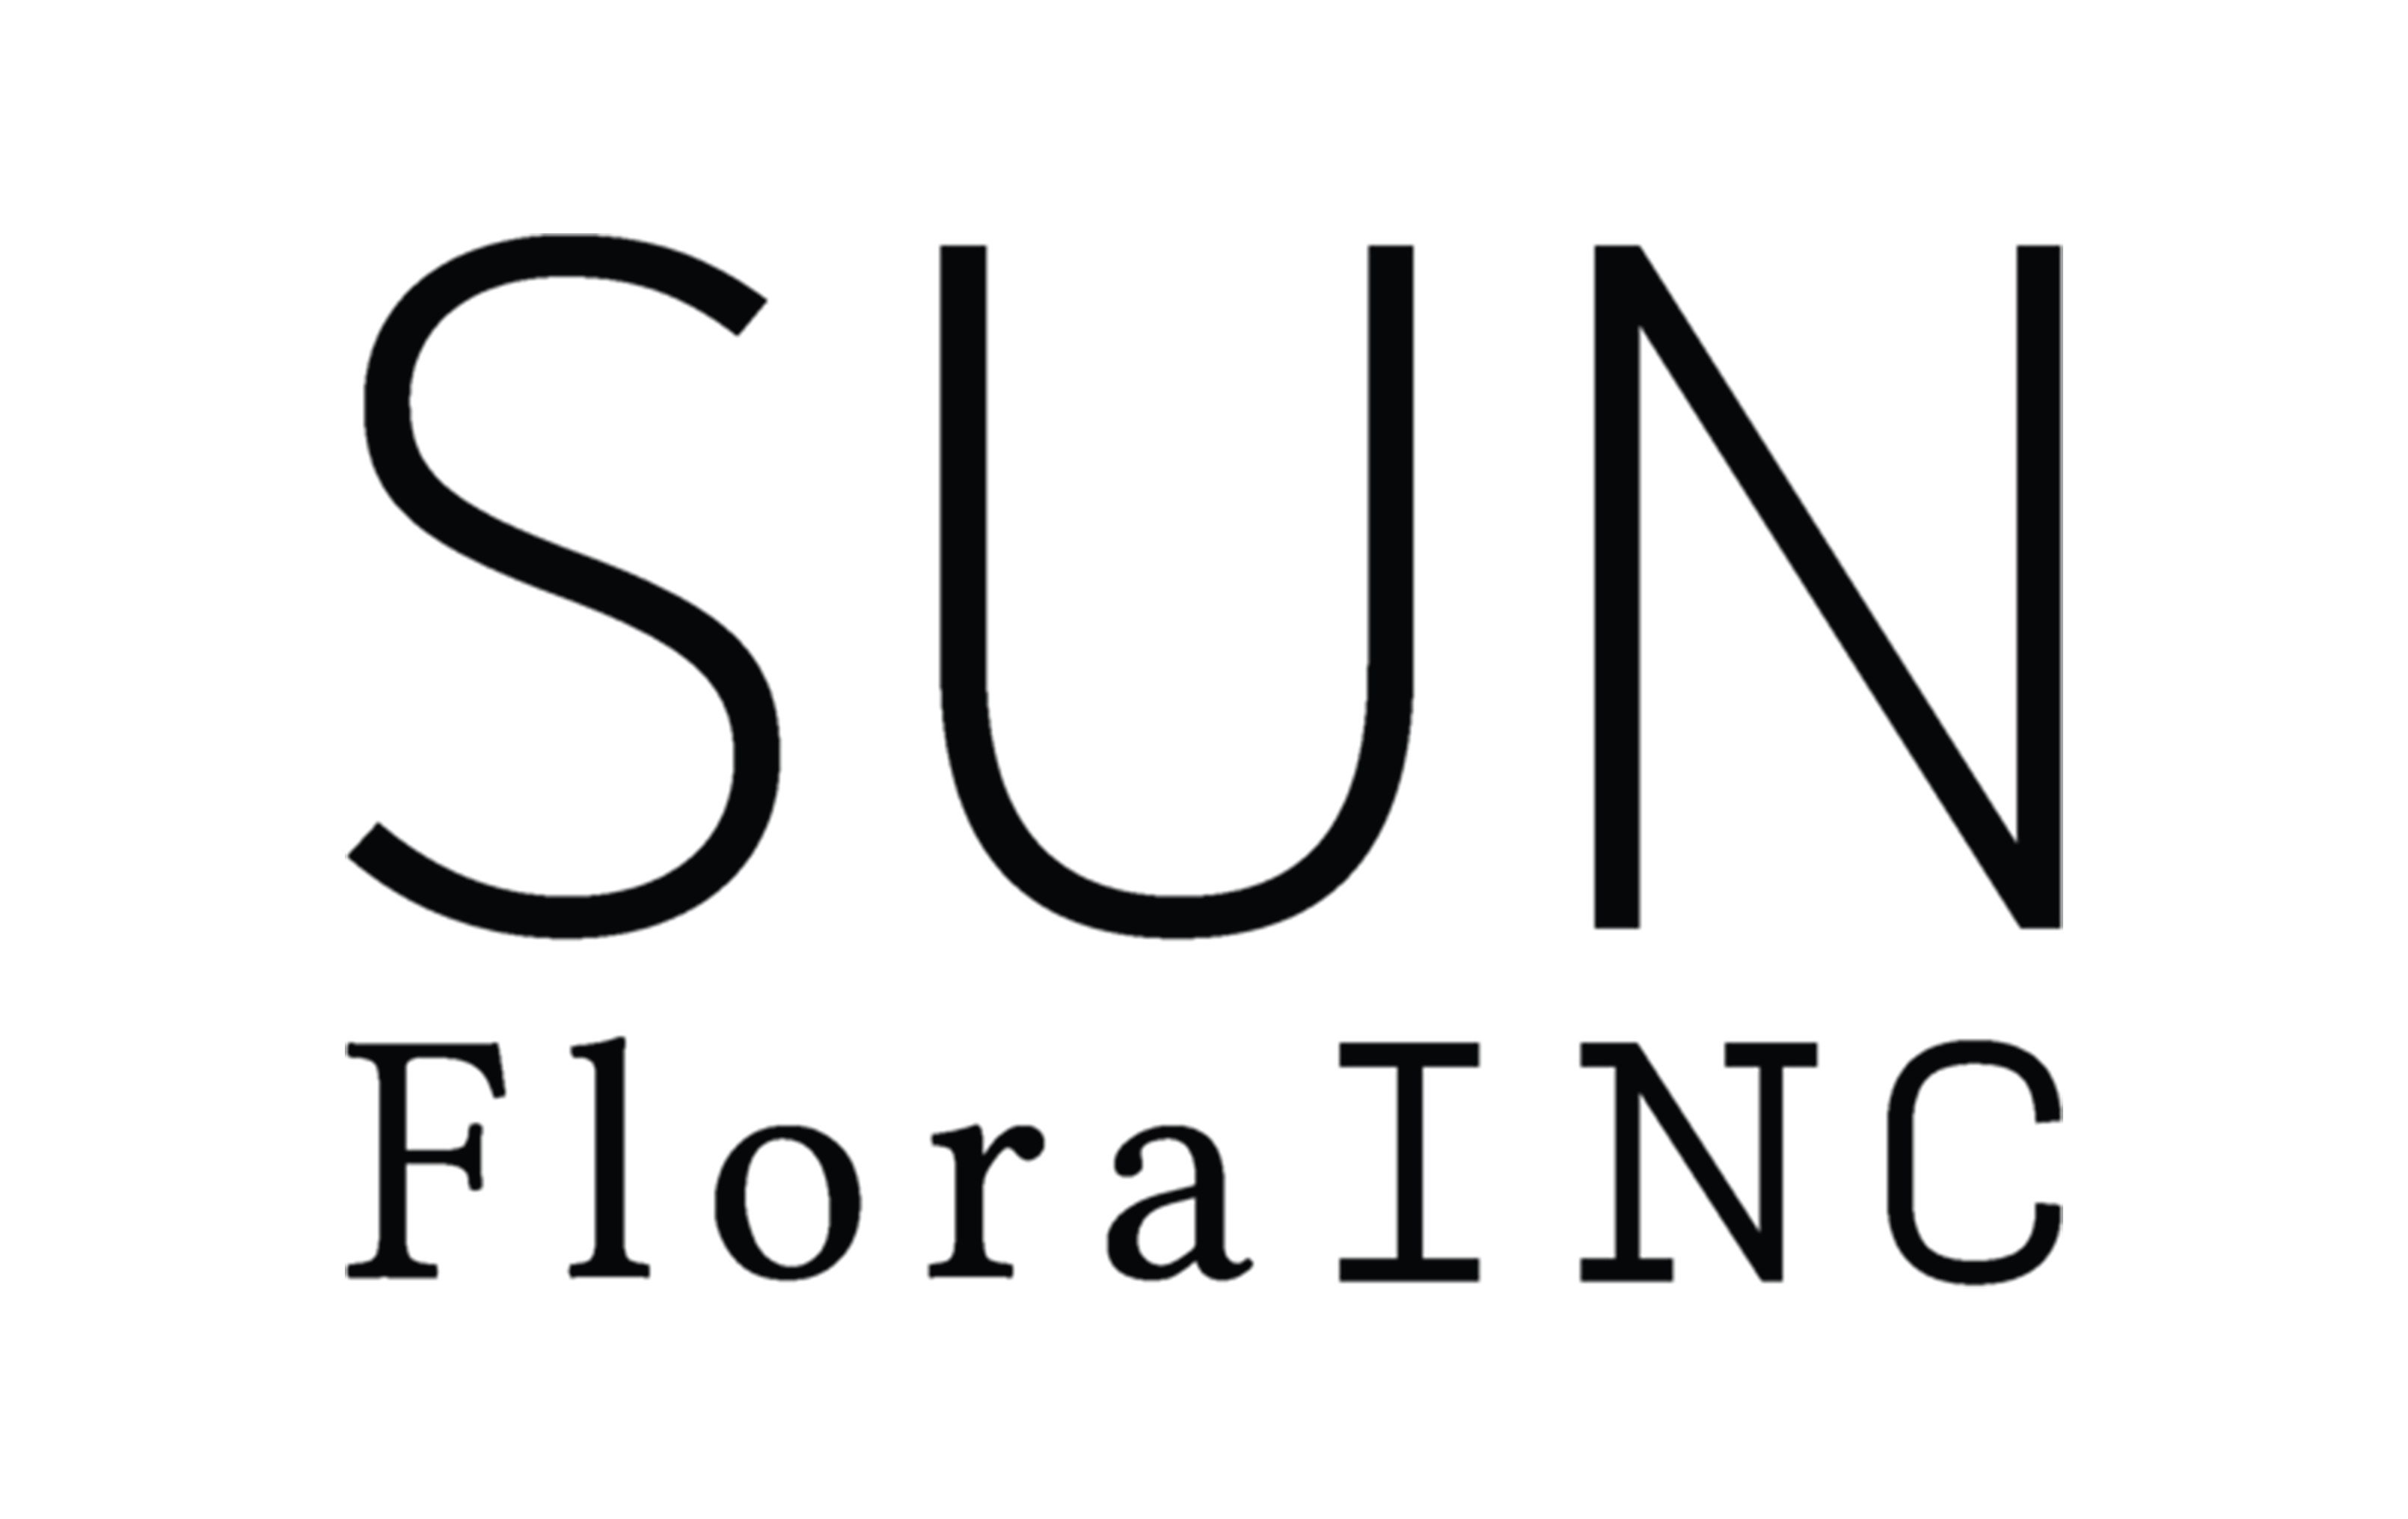 Sunflora logo